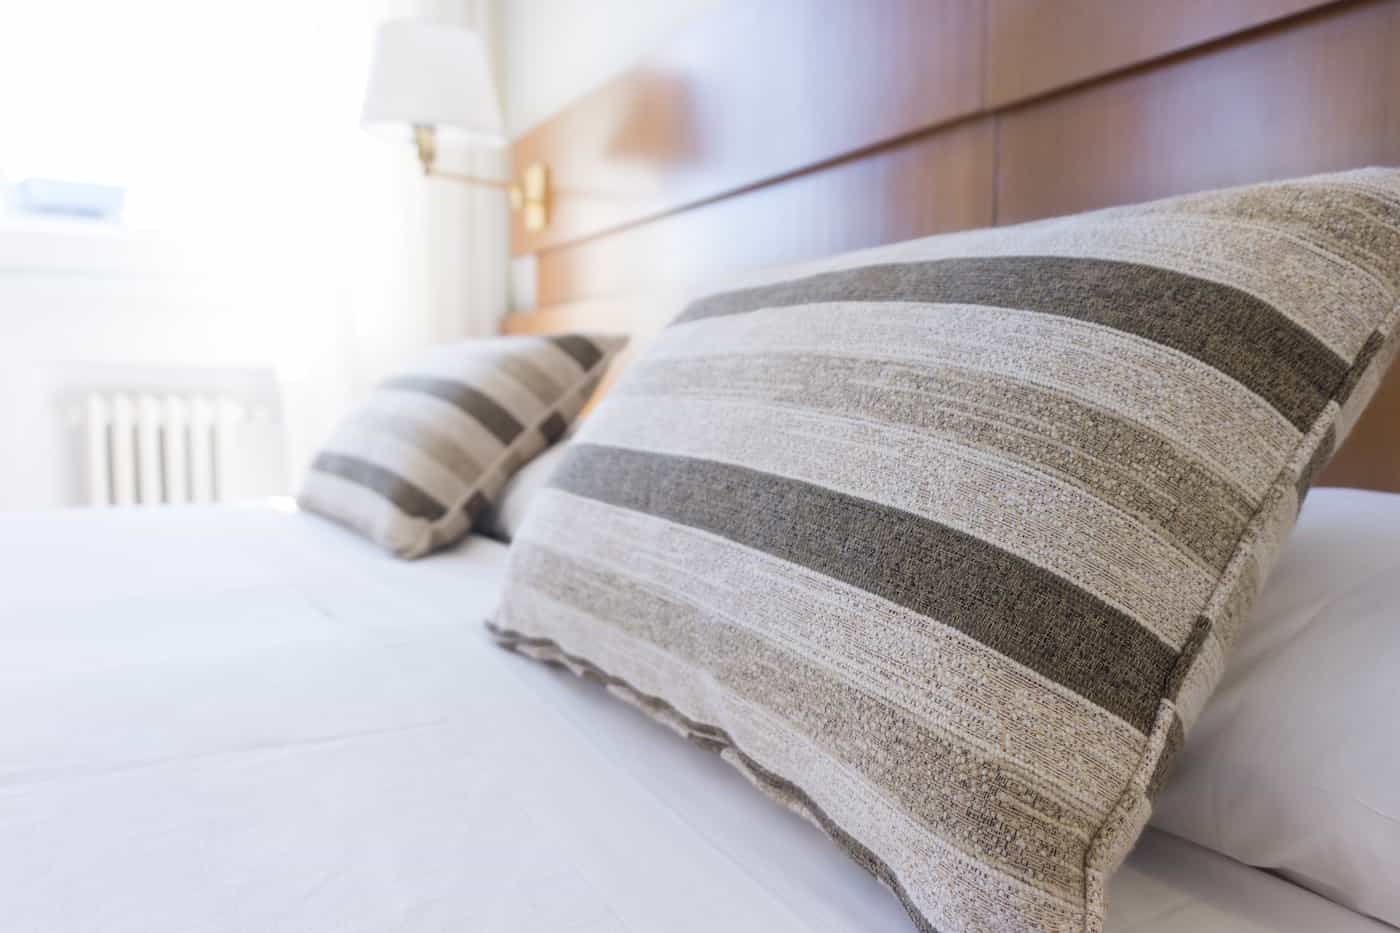 Comment faire un lit dans un hôtel de luxe ?